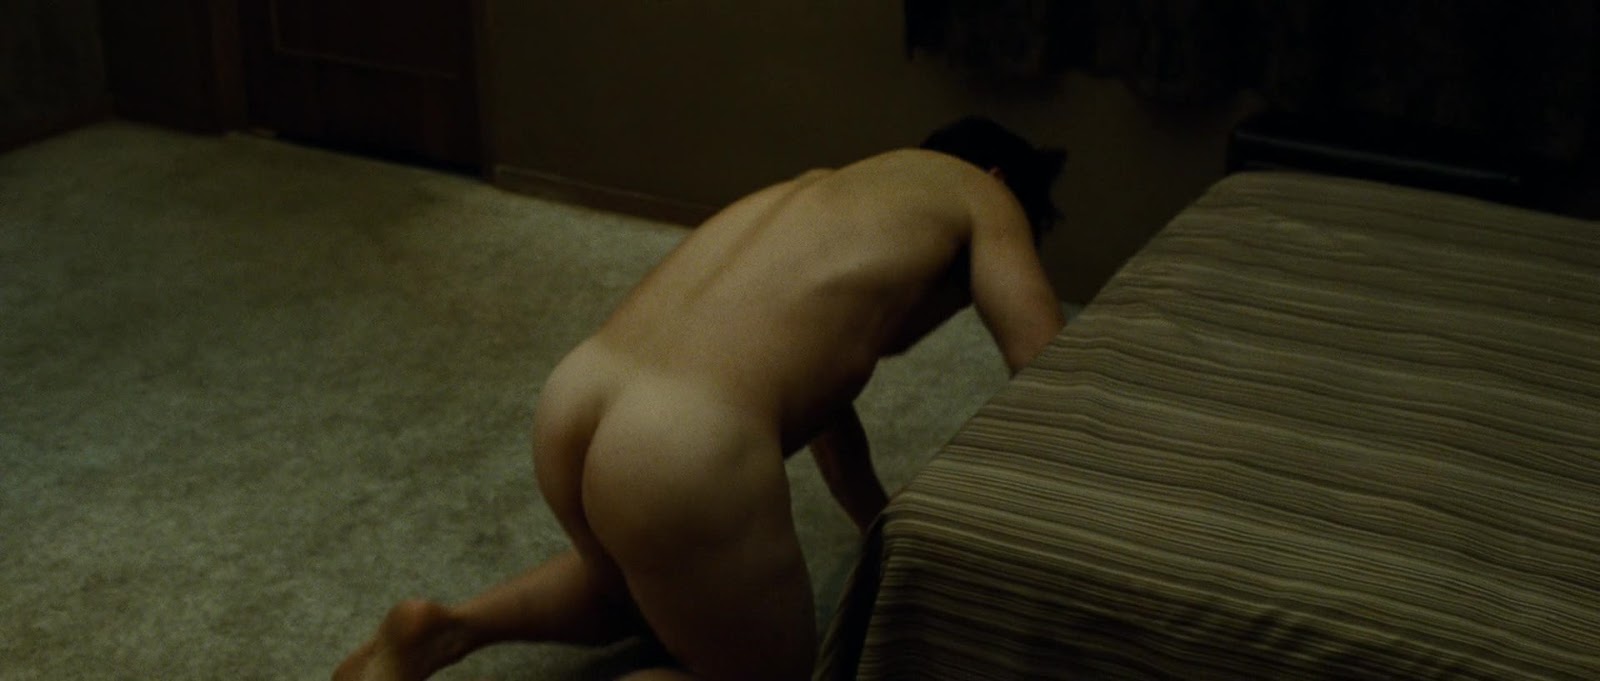 Josh Brolin nude in Oldboy.